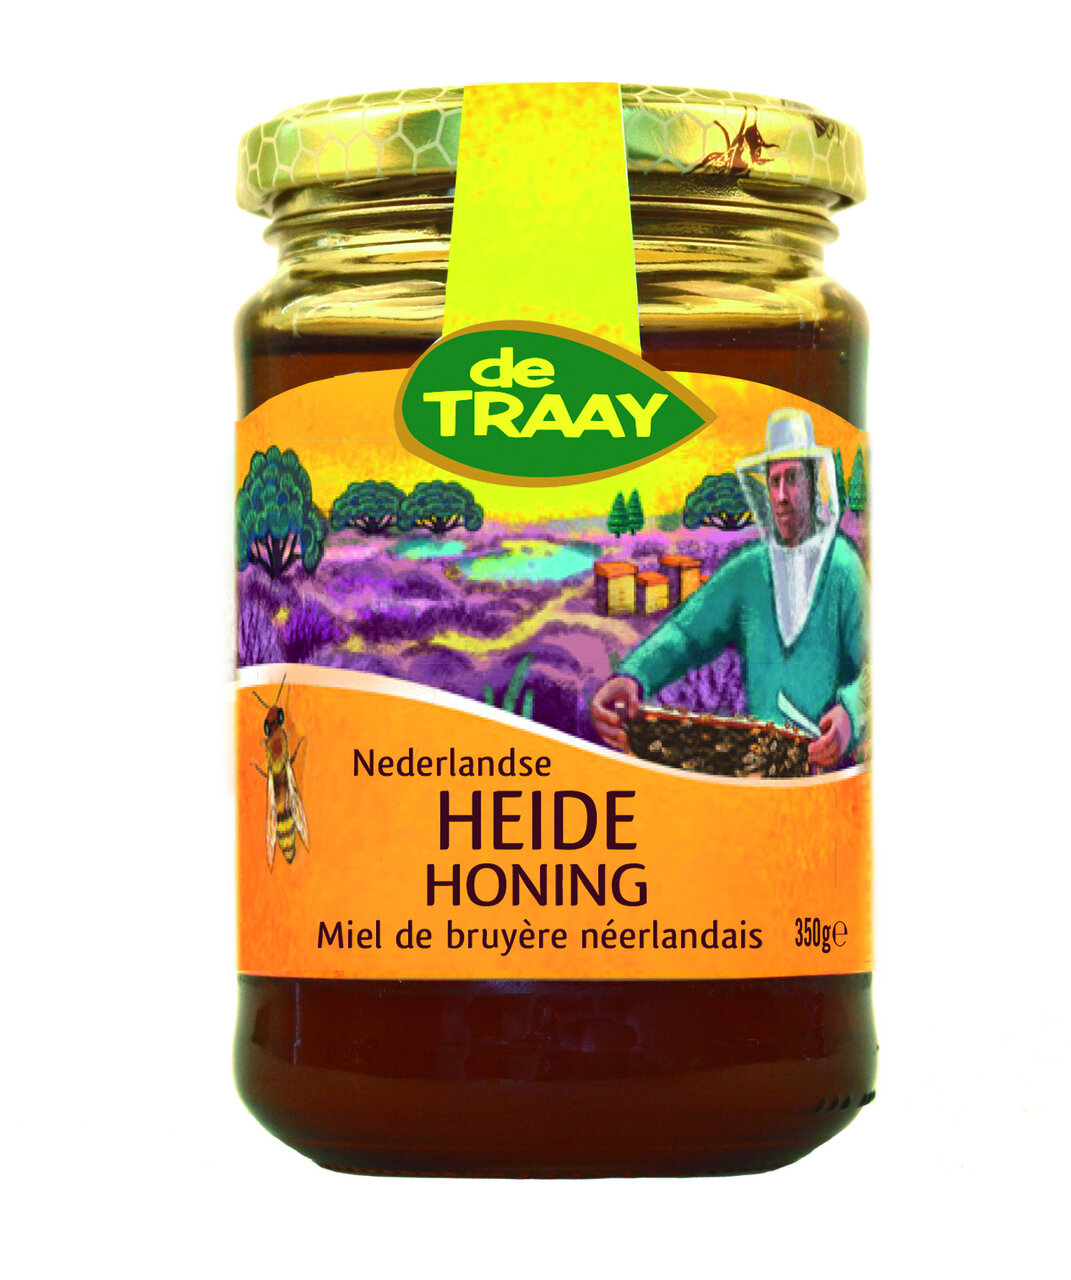 De Traay Nederlandse Heidehoning